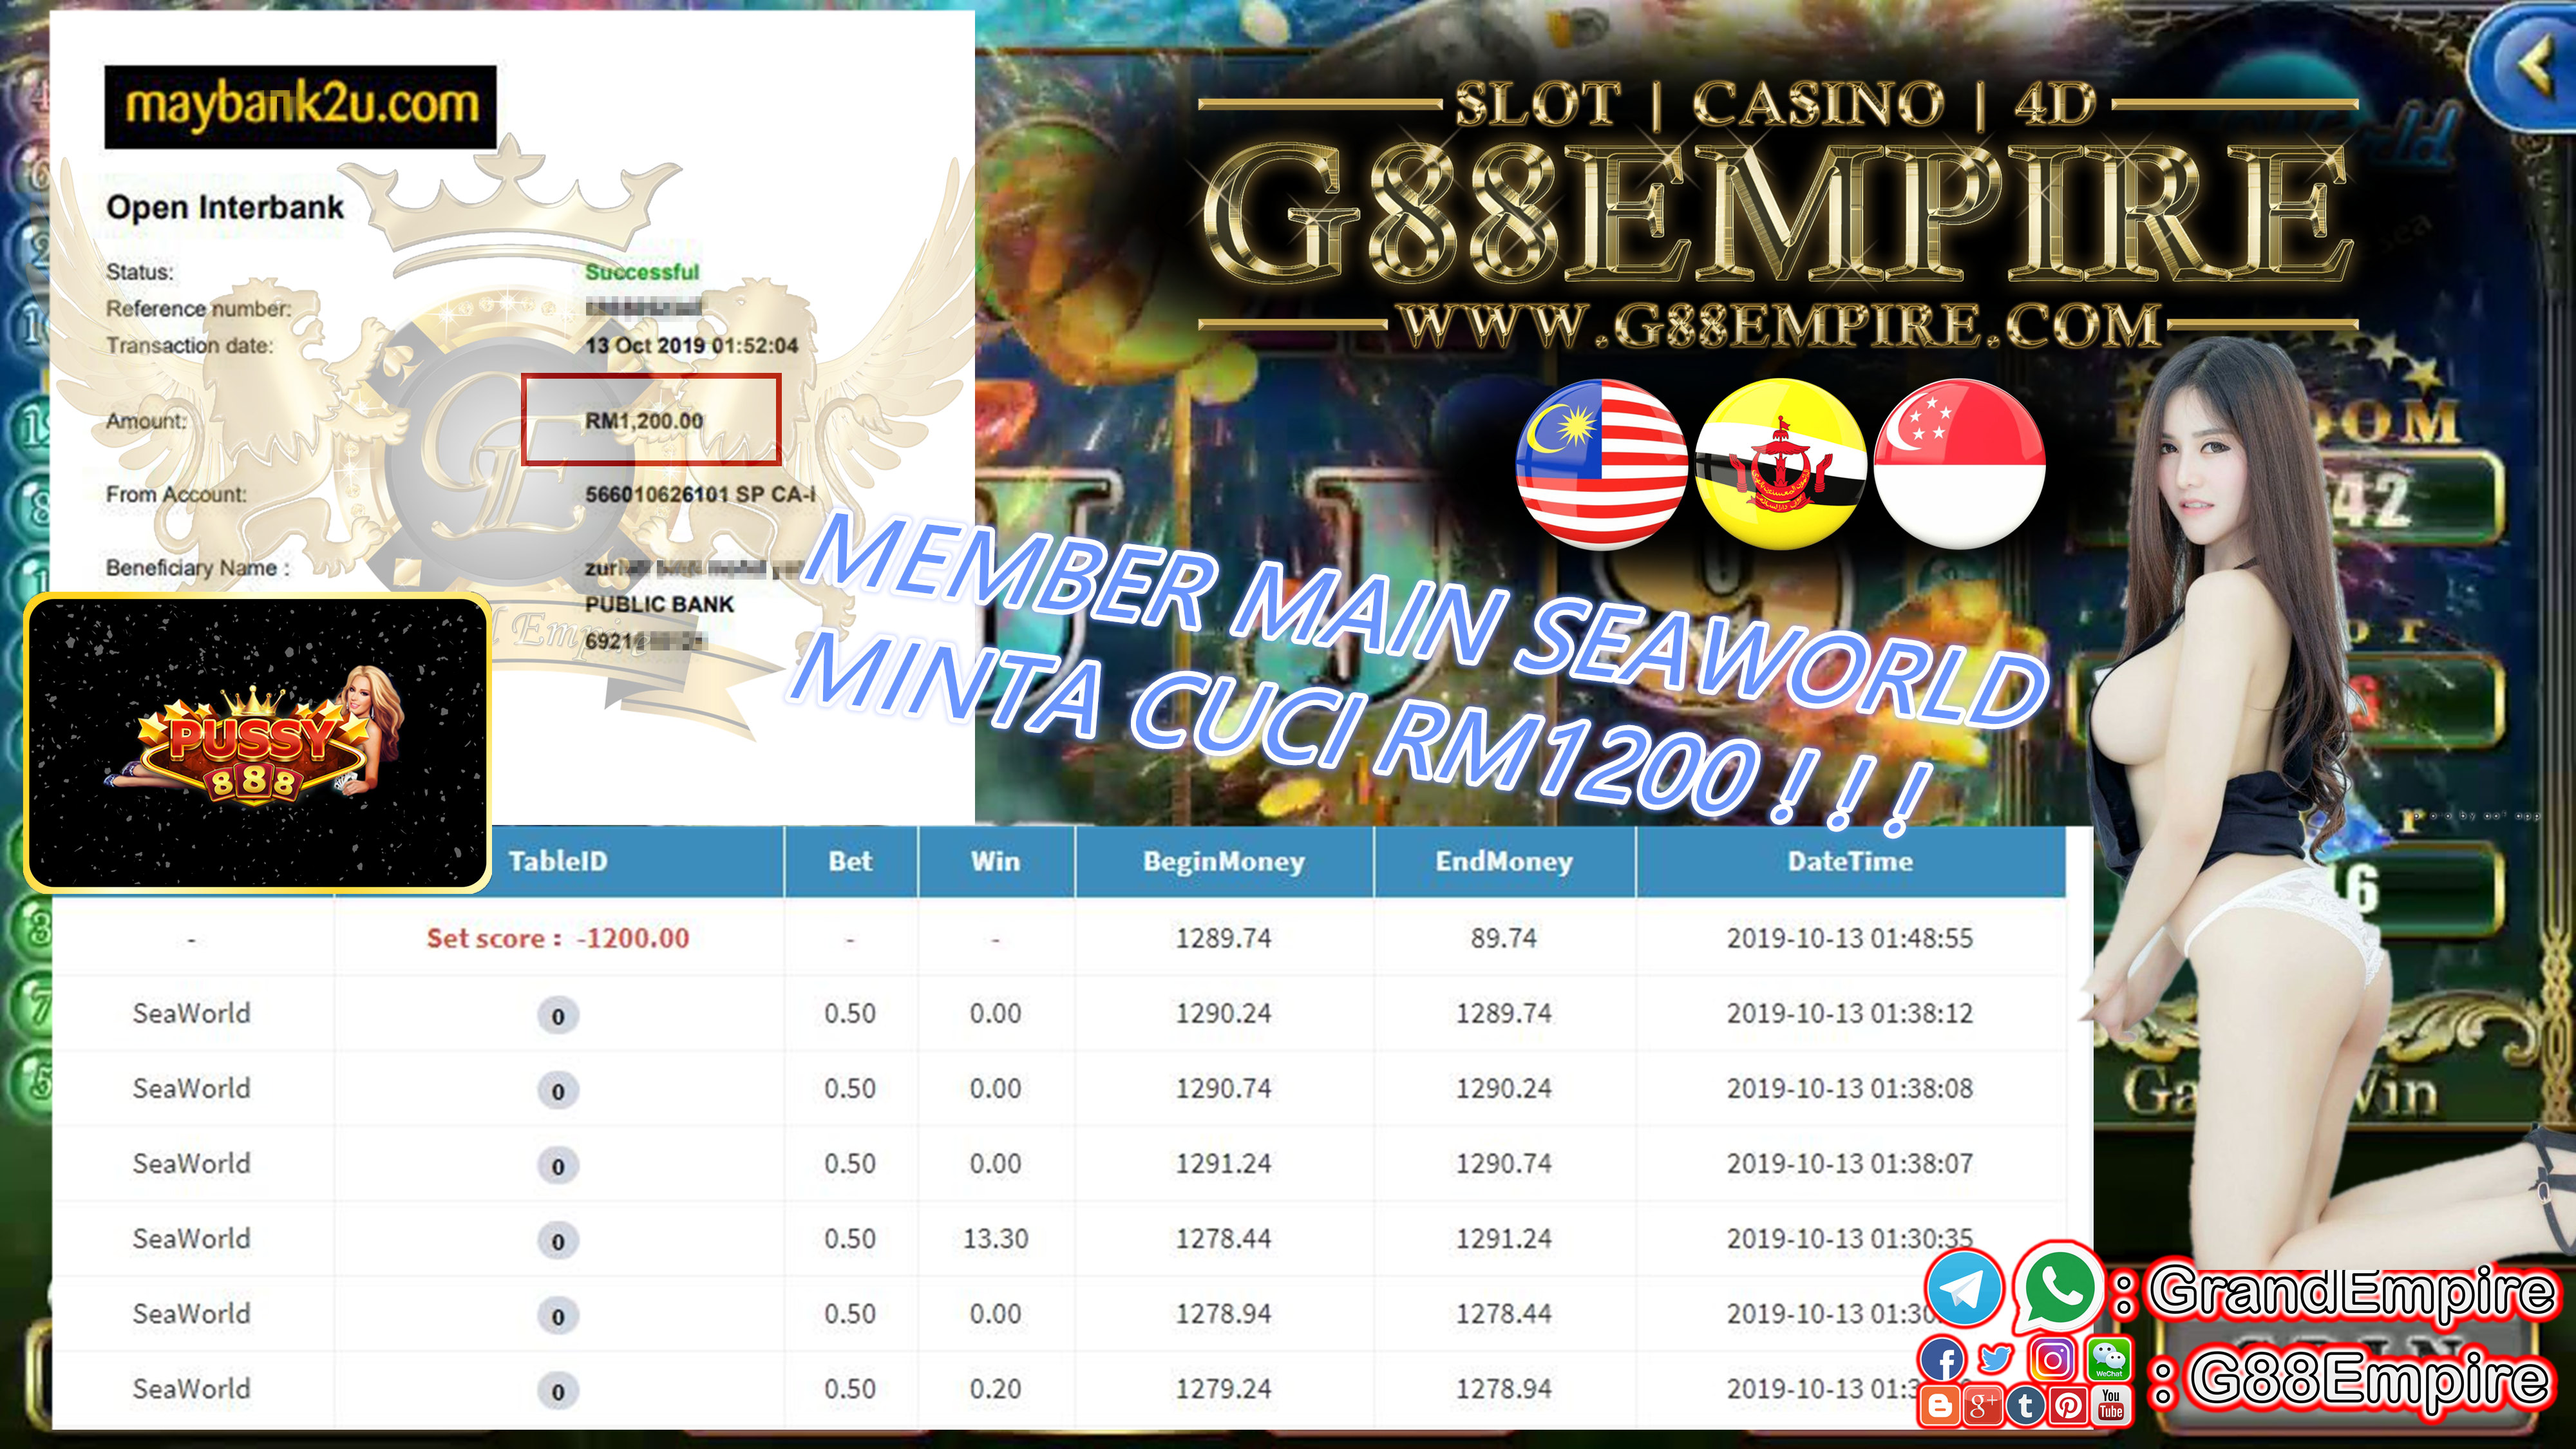 MEMBER MAIN GAME SEAWORLD MINTA CUCI RM1200 !!!